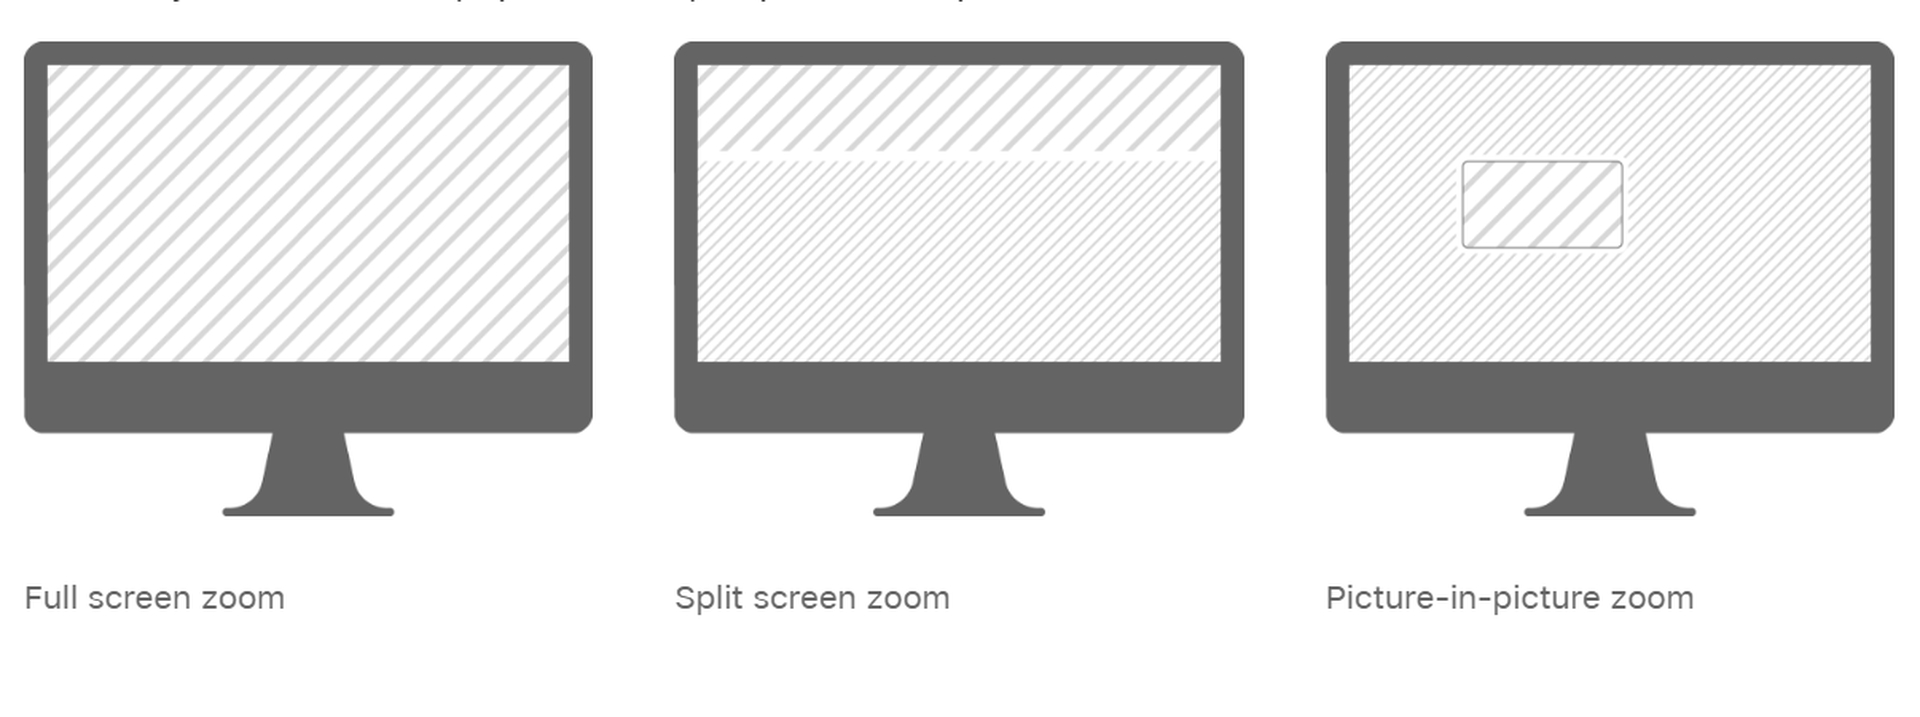 Mac ekran büyütme/küçültme yolları